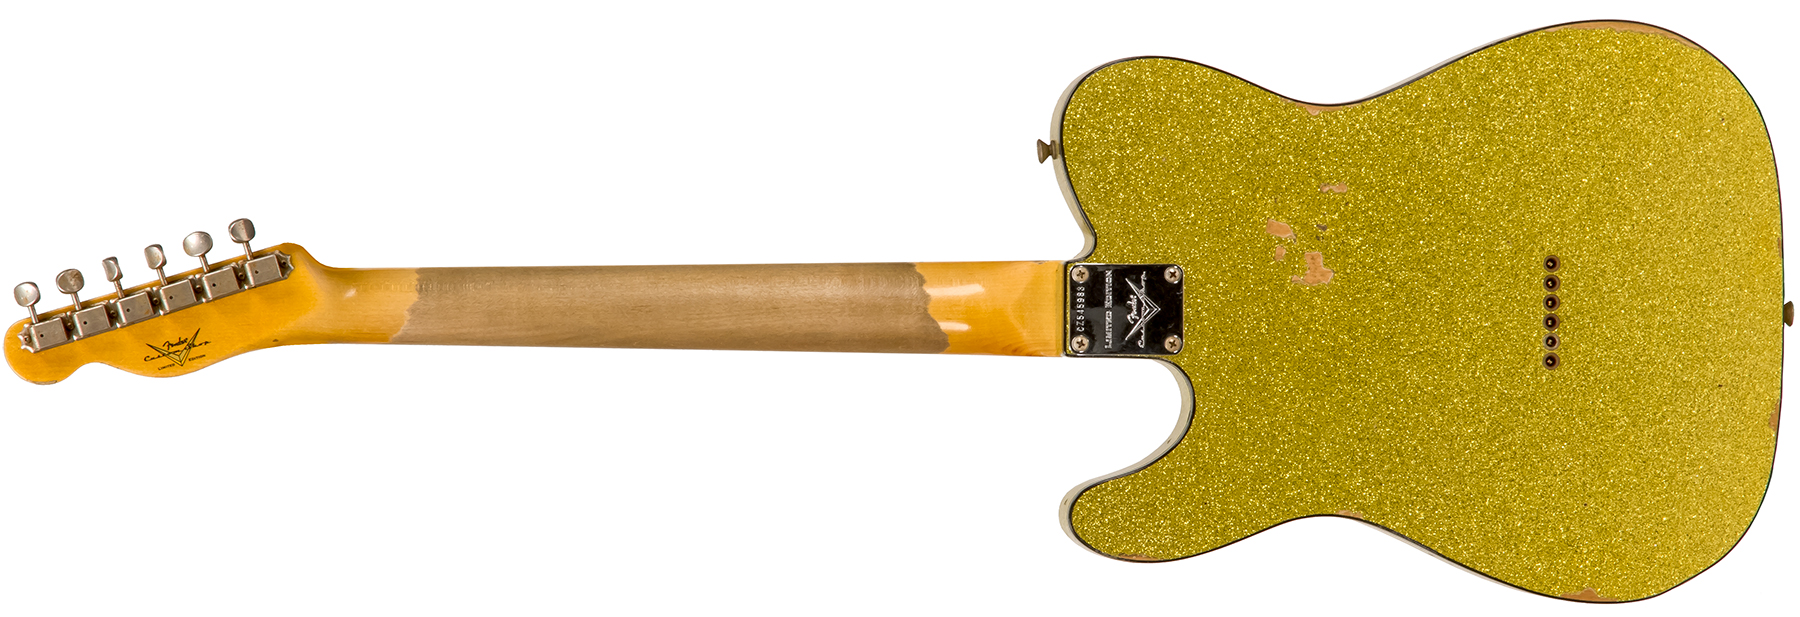 Fender Custom Shop Tele Custom 1963 2020 Ltd Rw #cz545983 - Relic Chartreuse Sparkle - Guitare Électrique Forme Tel - Variation 1